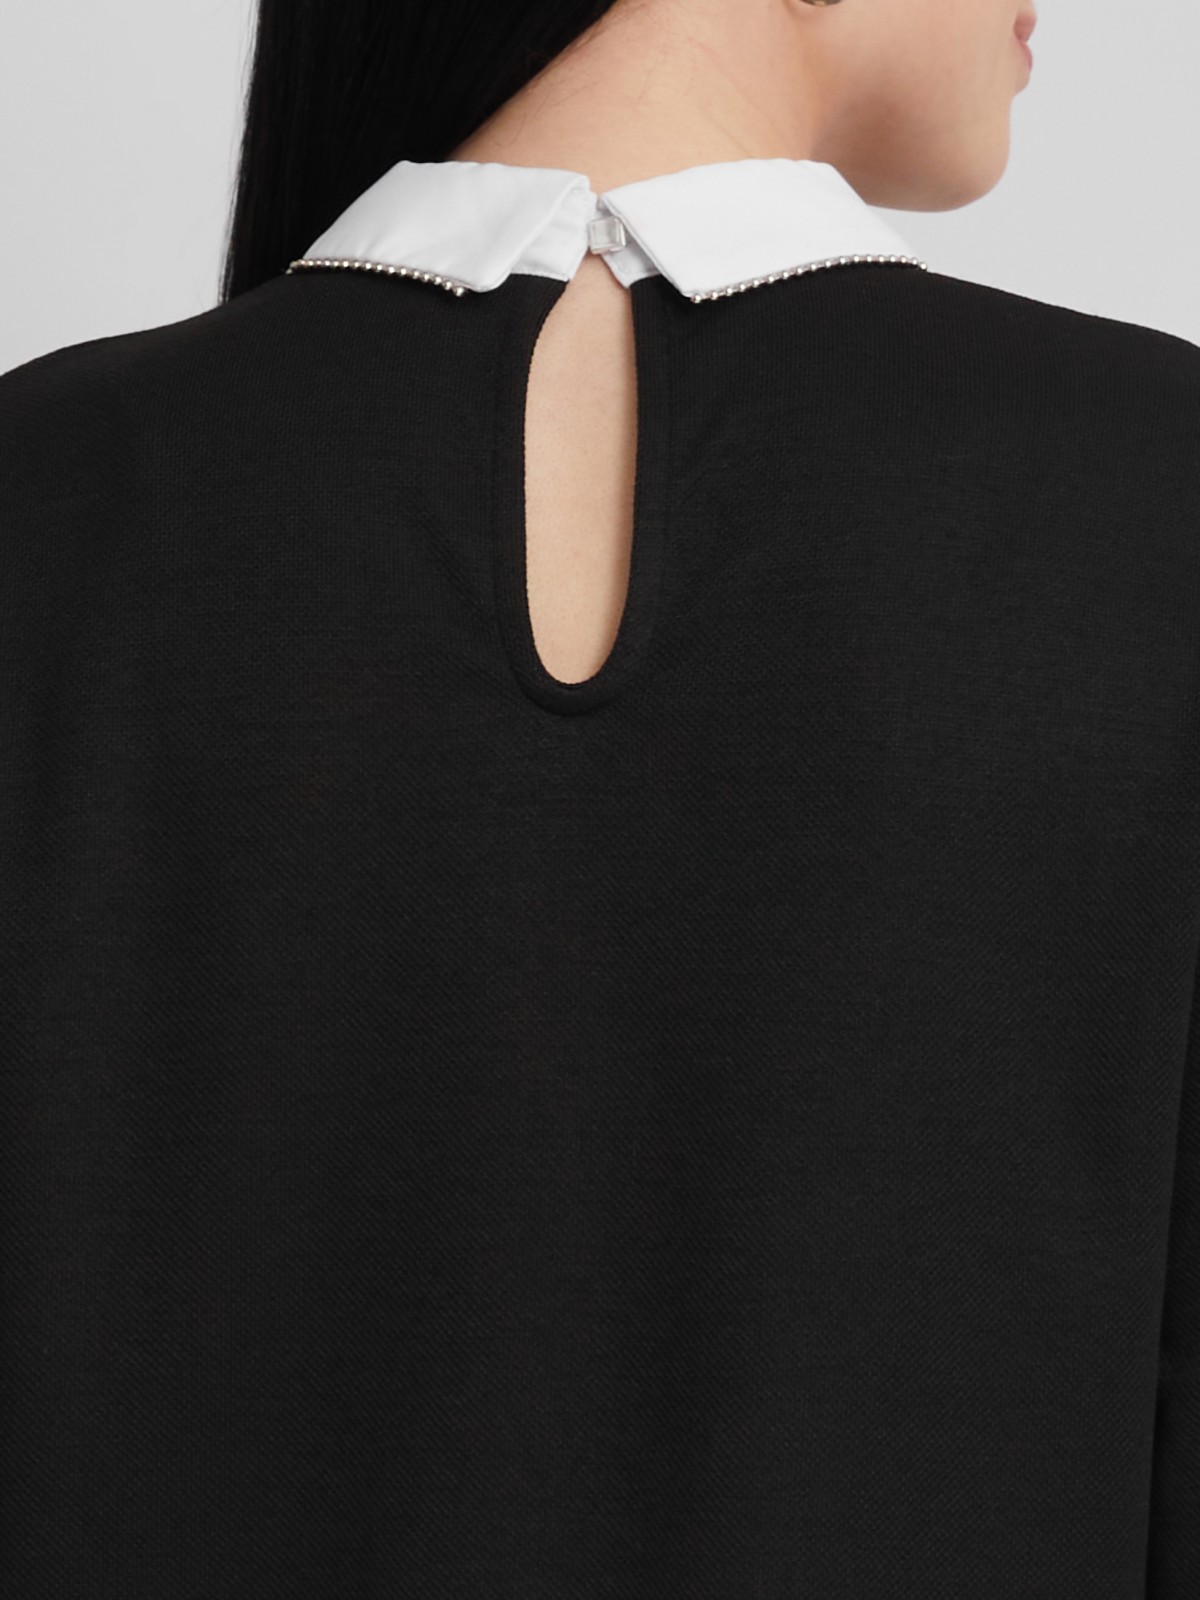 Комбинированный джемпер с блузкой zolla 023313713053, цвет черный, размер M - фото 4